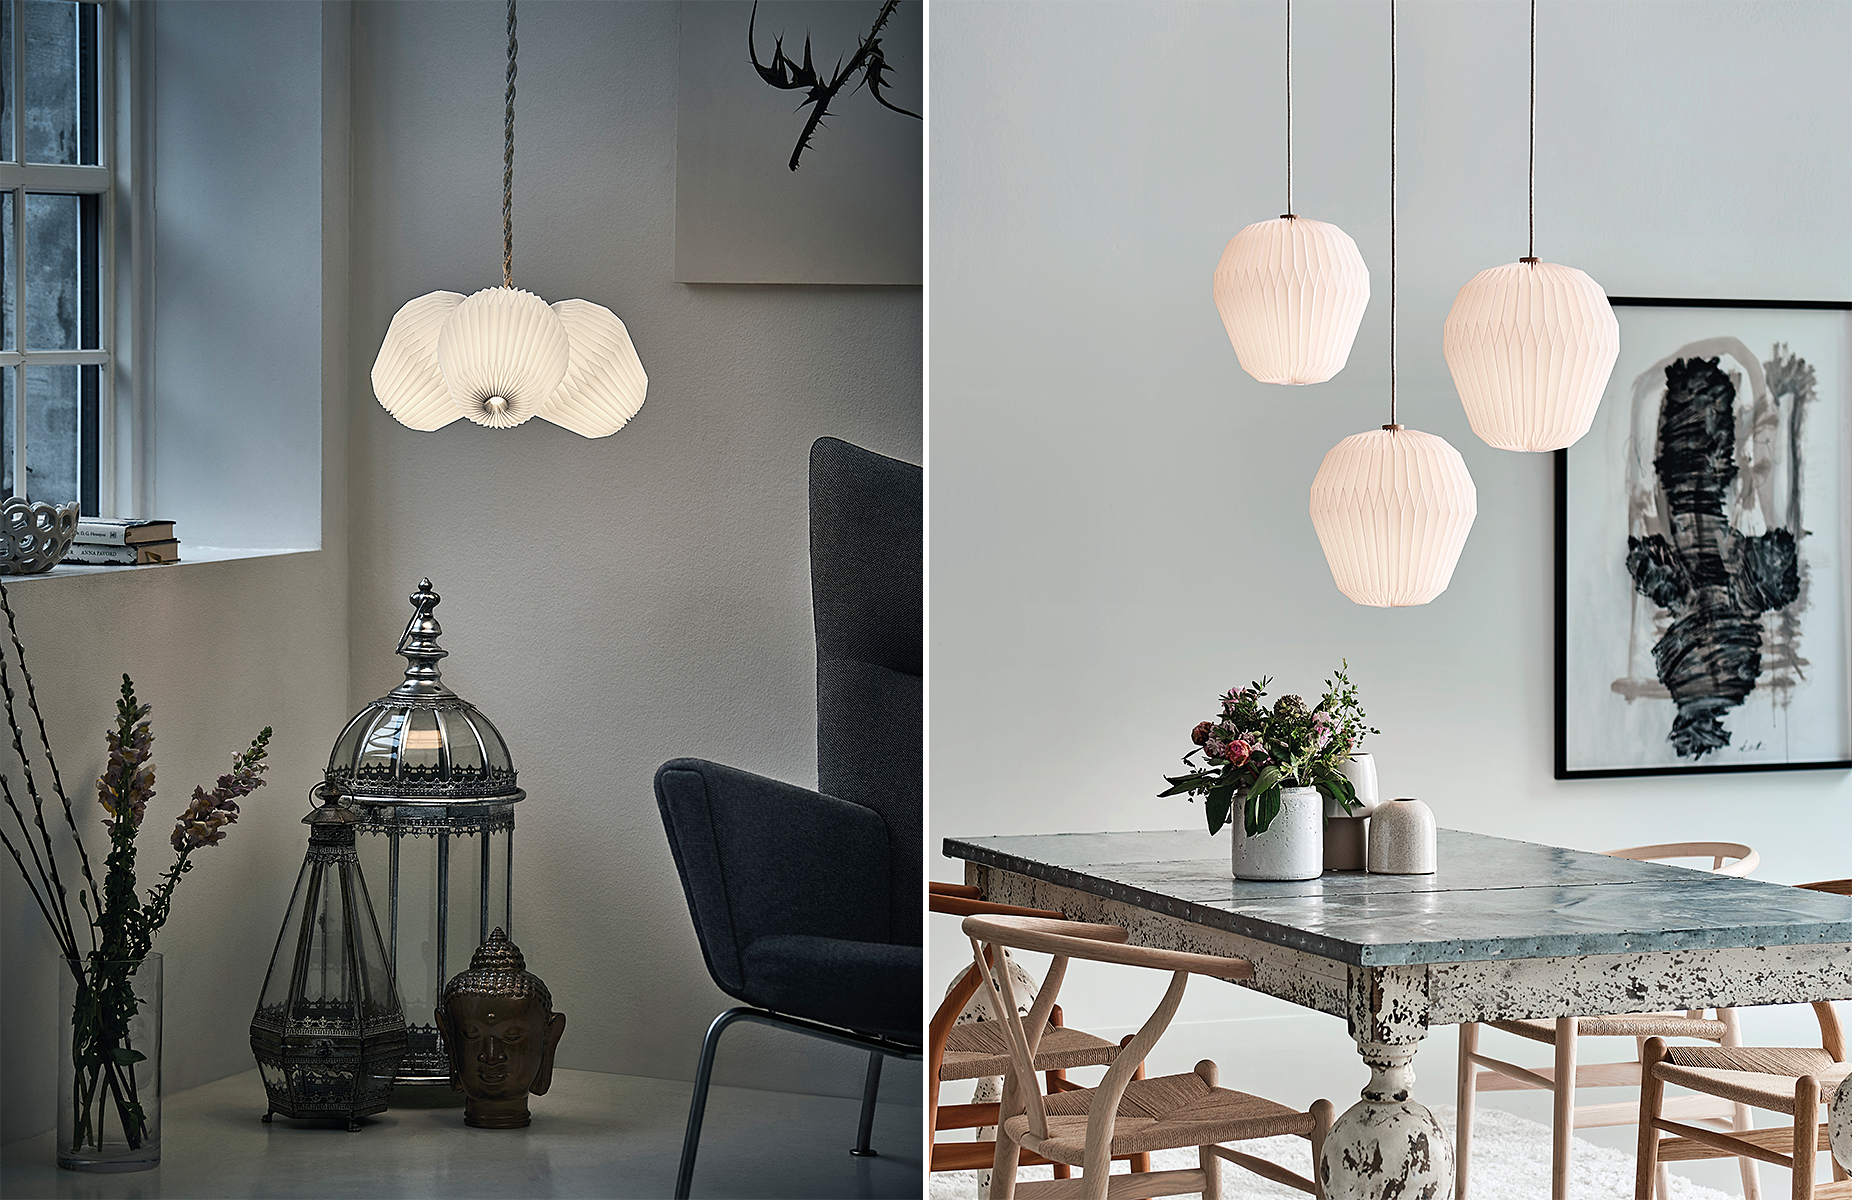 Le lamper | dansk design inden for belysning